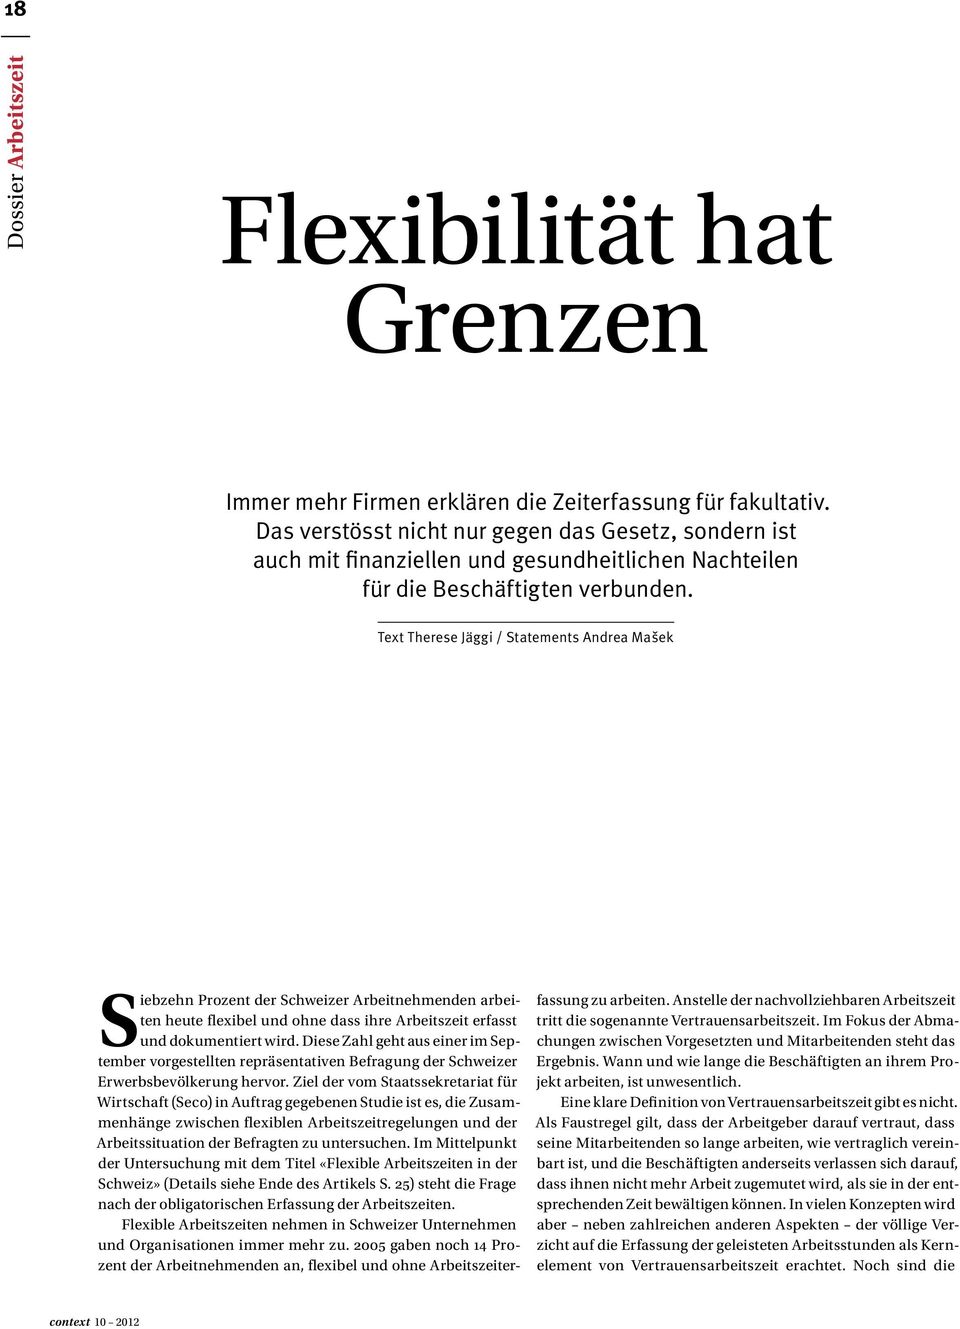 Text Therese Jäggi / Statements Andrea Mašek Siebzehn Prozent der Schweizer Arbeitnehmenden arbeiten heute flexibel und ohne dass ihre Arbeitszeit erfasst und dokumentiert wird.